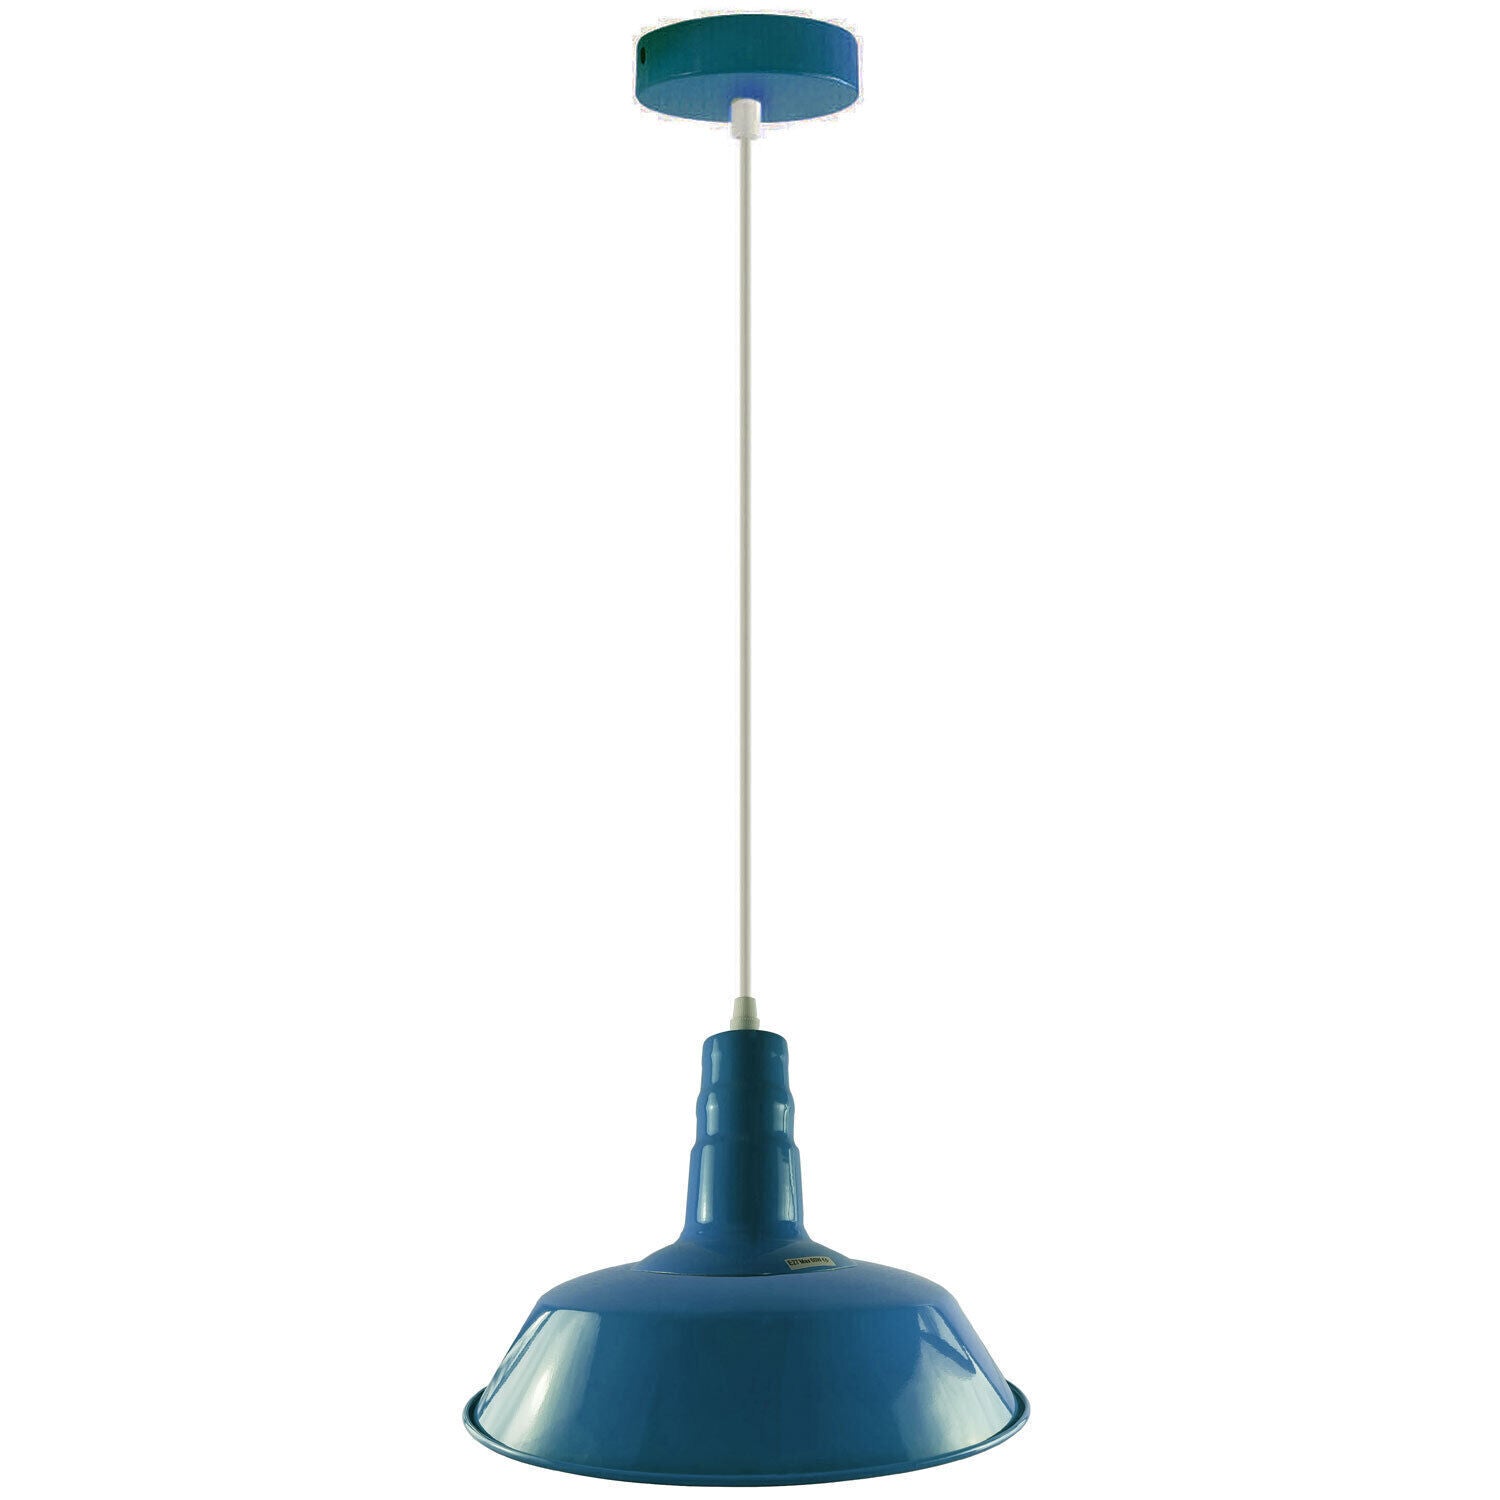 Modern Hanging pendant Ceiling Lamp, Metal Light Shade Lighting UK E27 Edison base Decorate Height Adjustable Pendant Light for Bar, Restaurant 